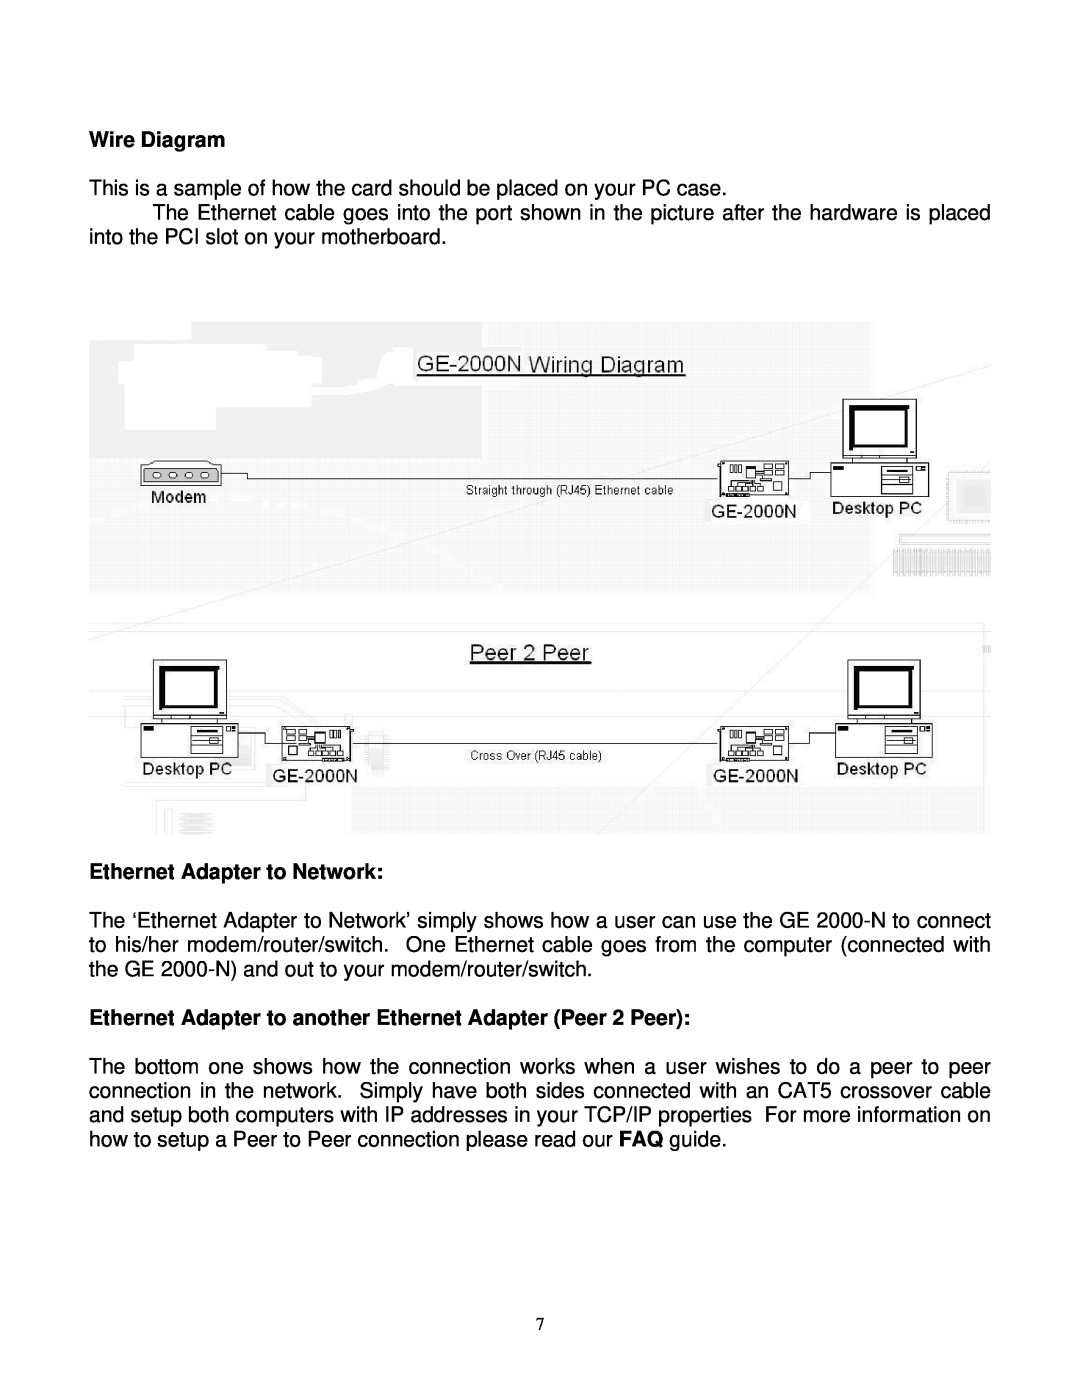 Gigabyte GE 2000-N Wire Diagram, Ethernet Adapter to Network, Ethernet Adapter to another Ethernet Adapter Peer 2 Peer 